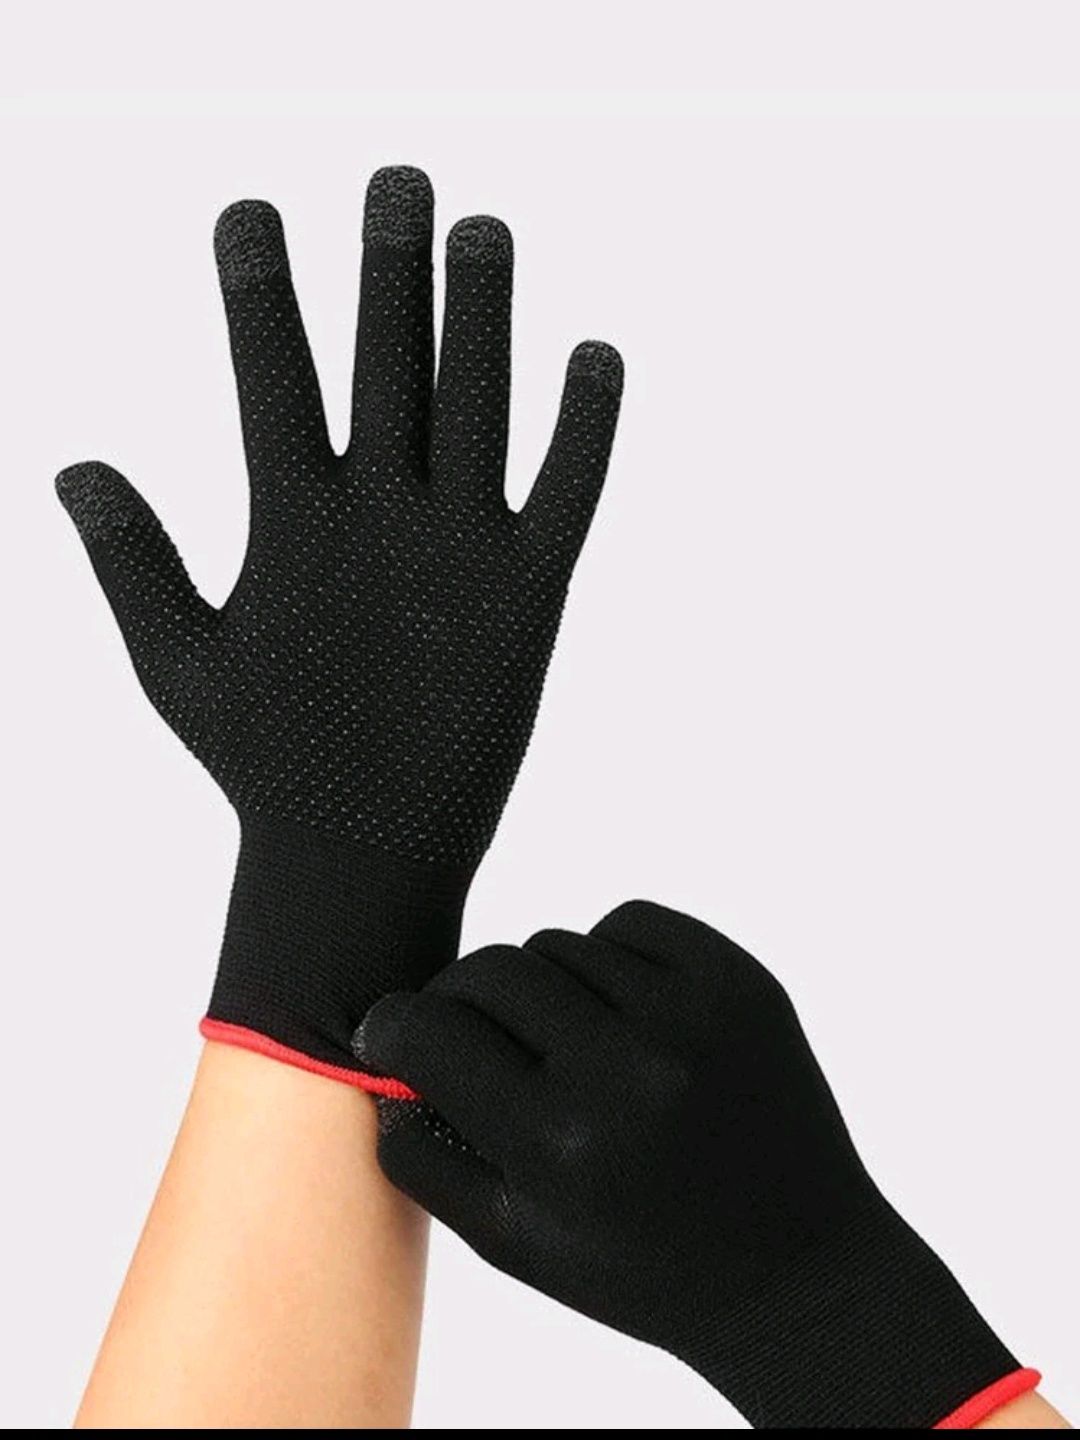 31. Cienkie rękawiczki można obskugiwać smartfony